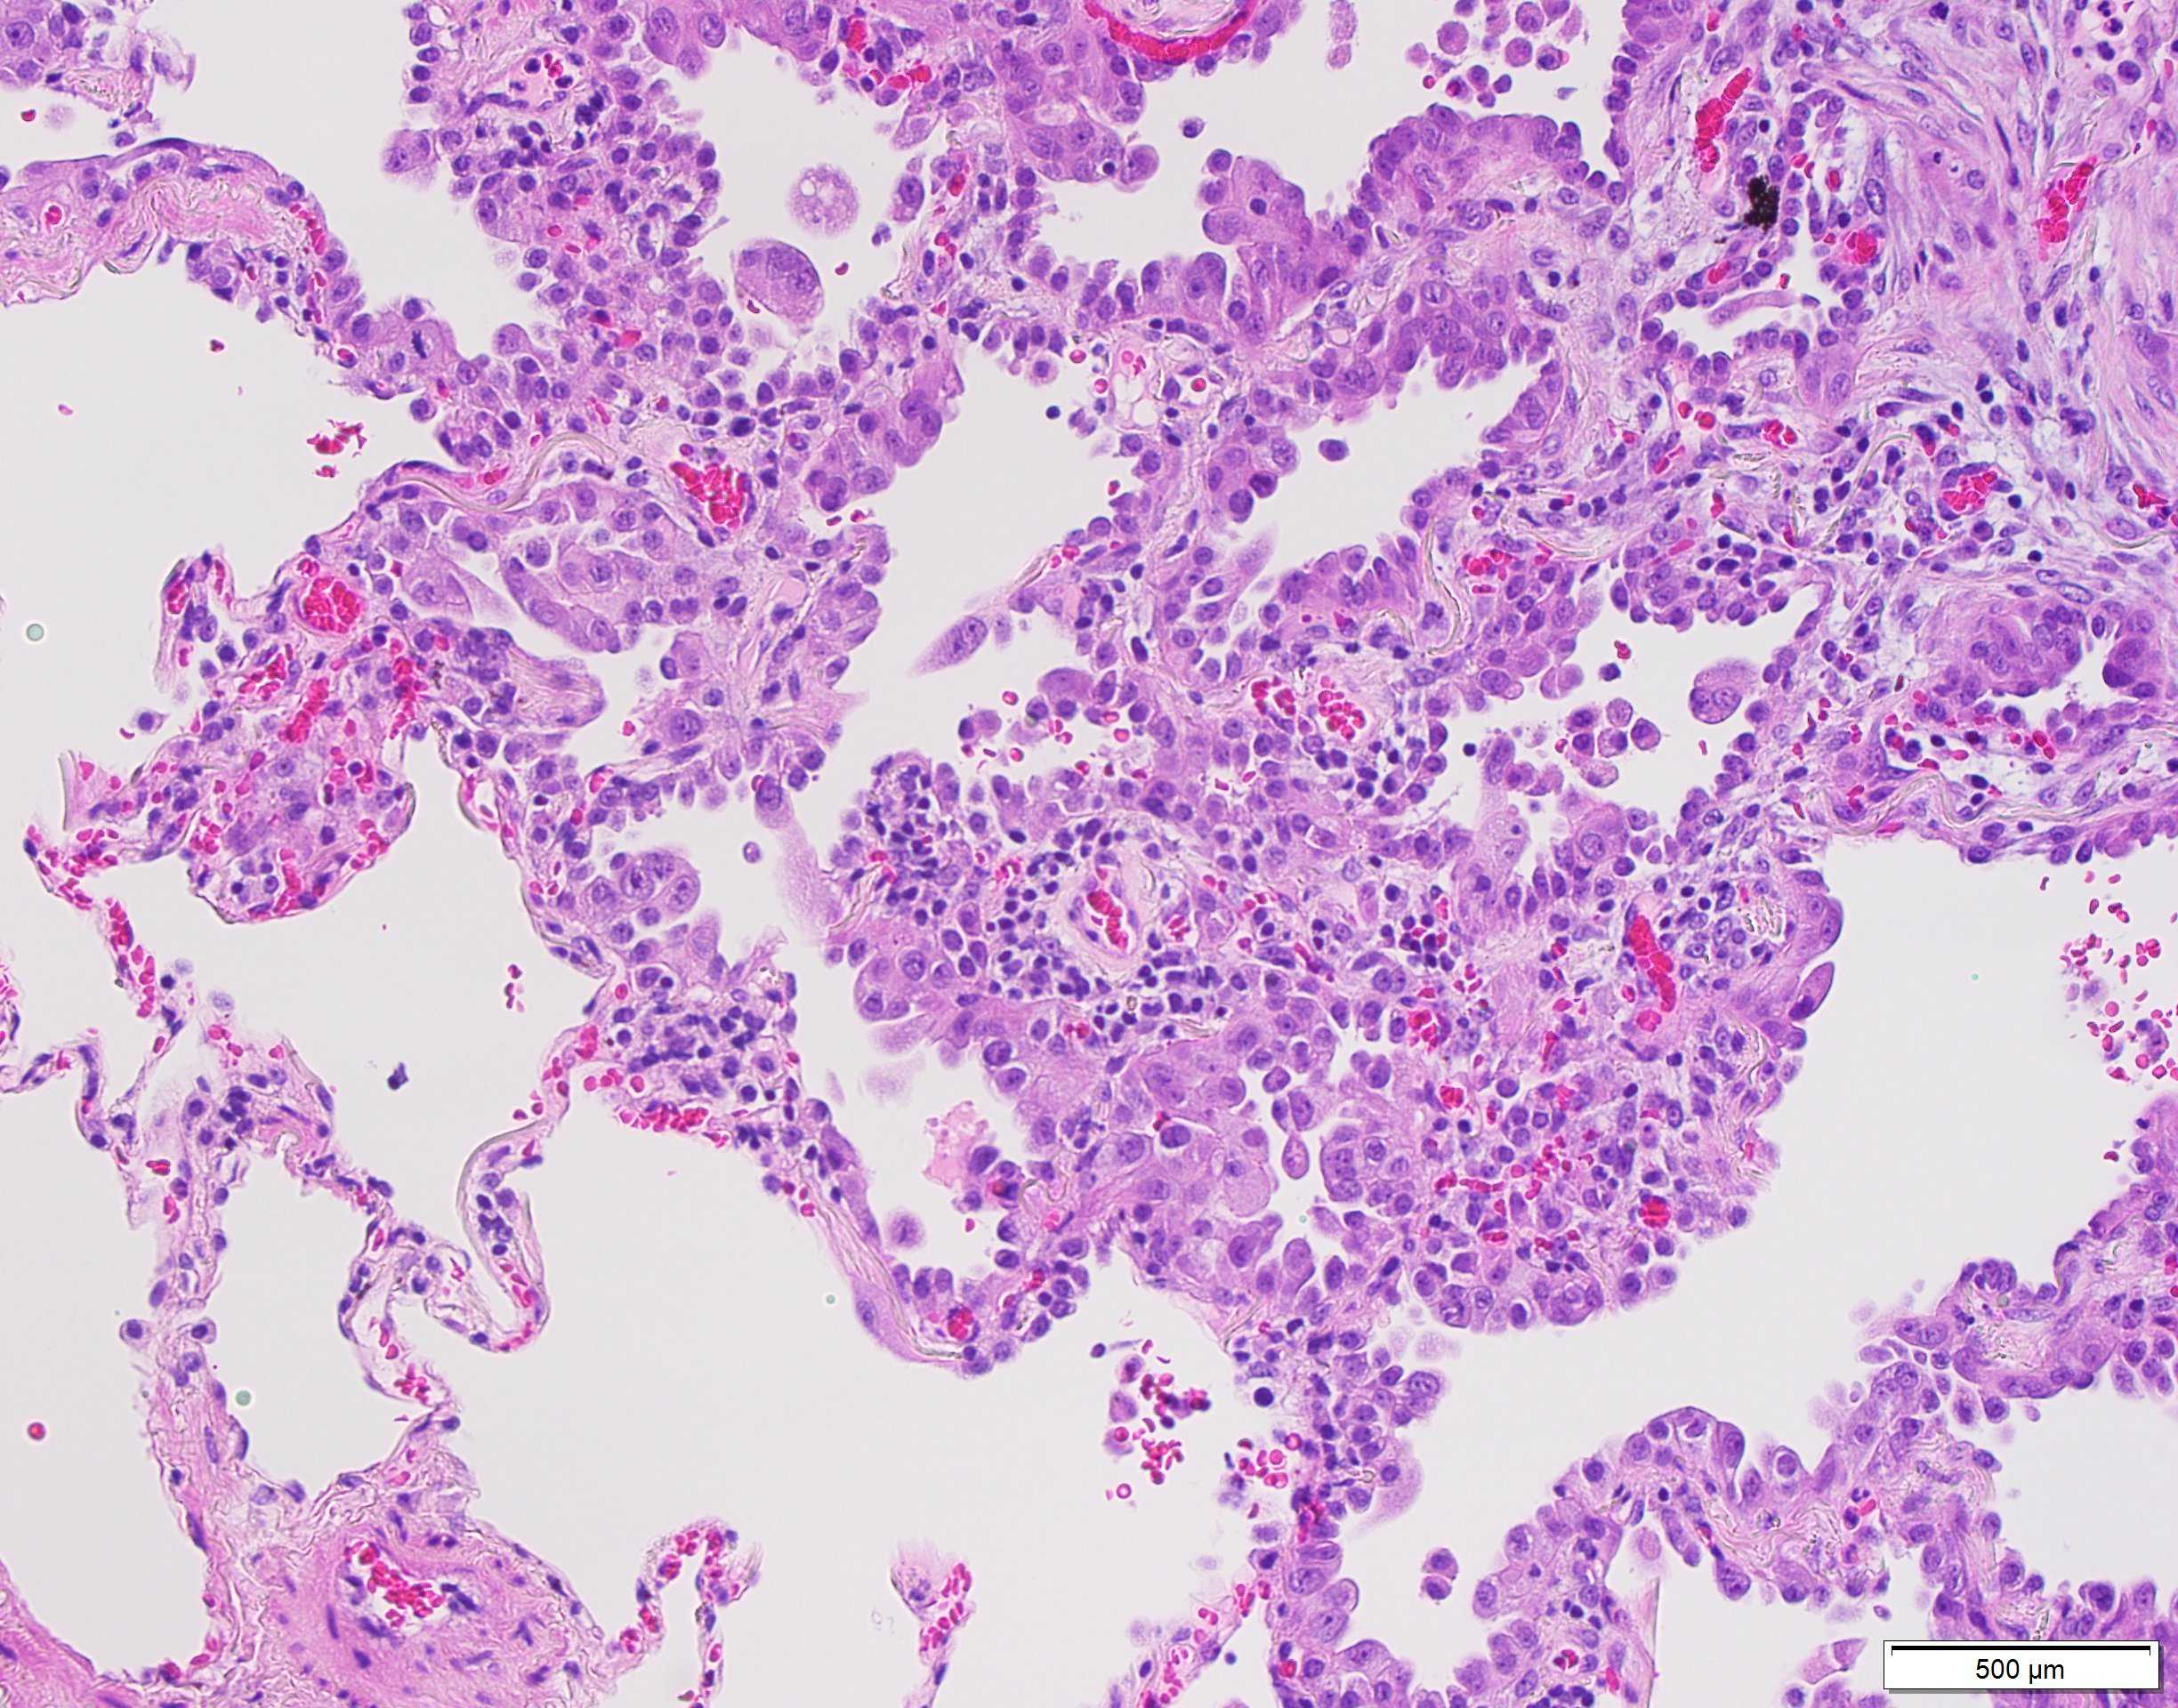 Imatge microscòpica de cel·lules cancerígenes de pulmó